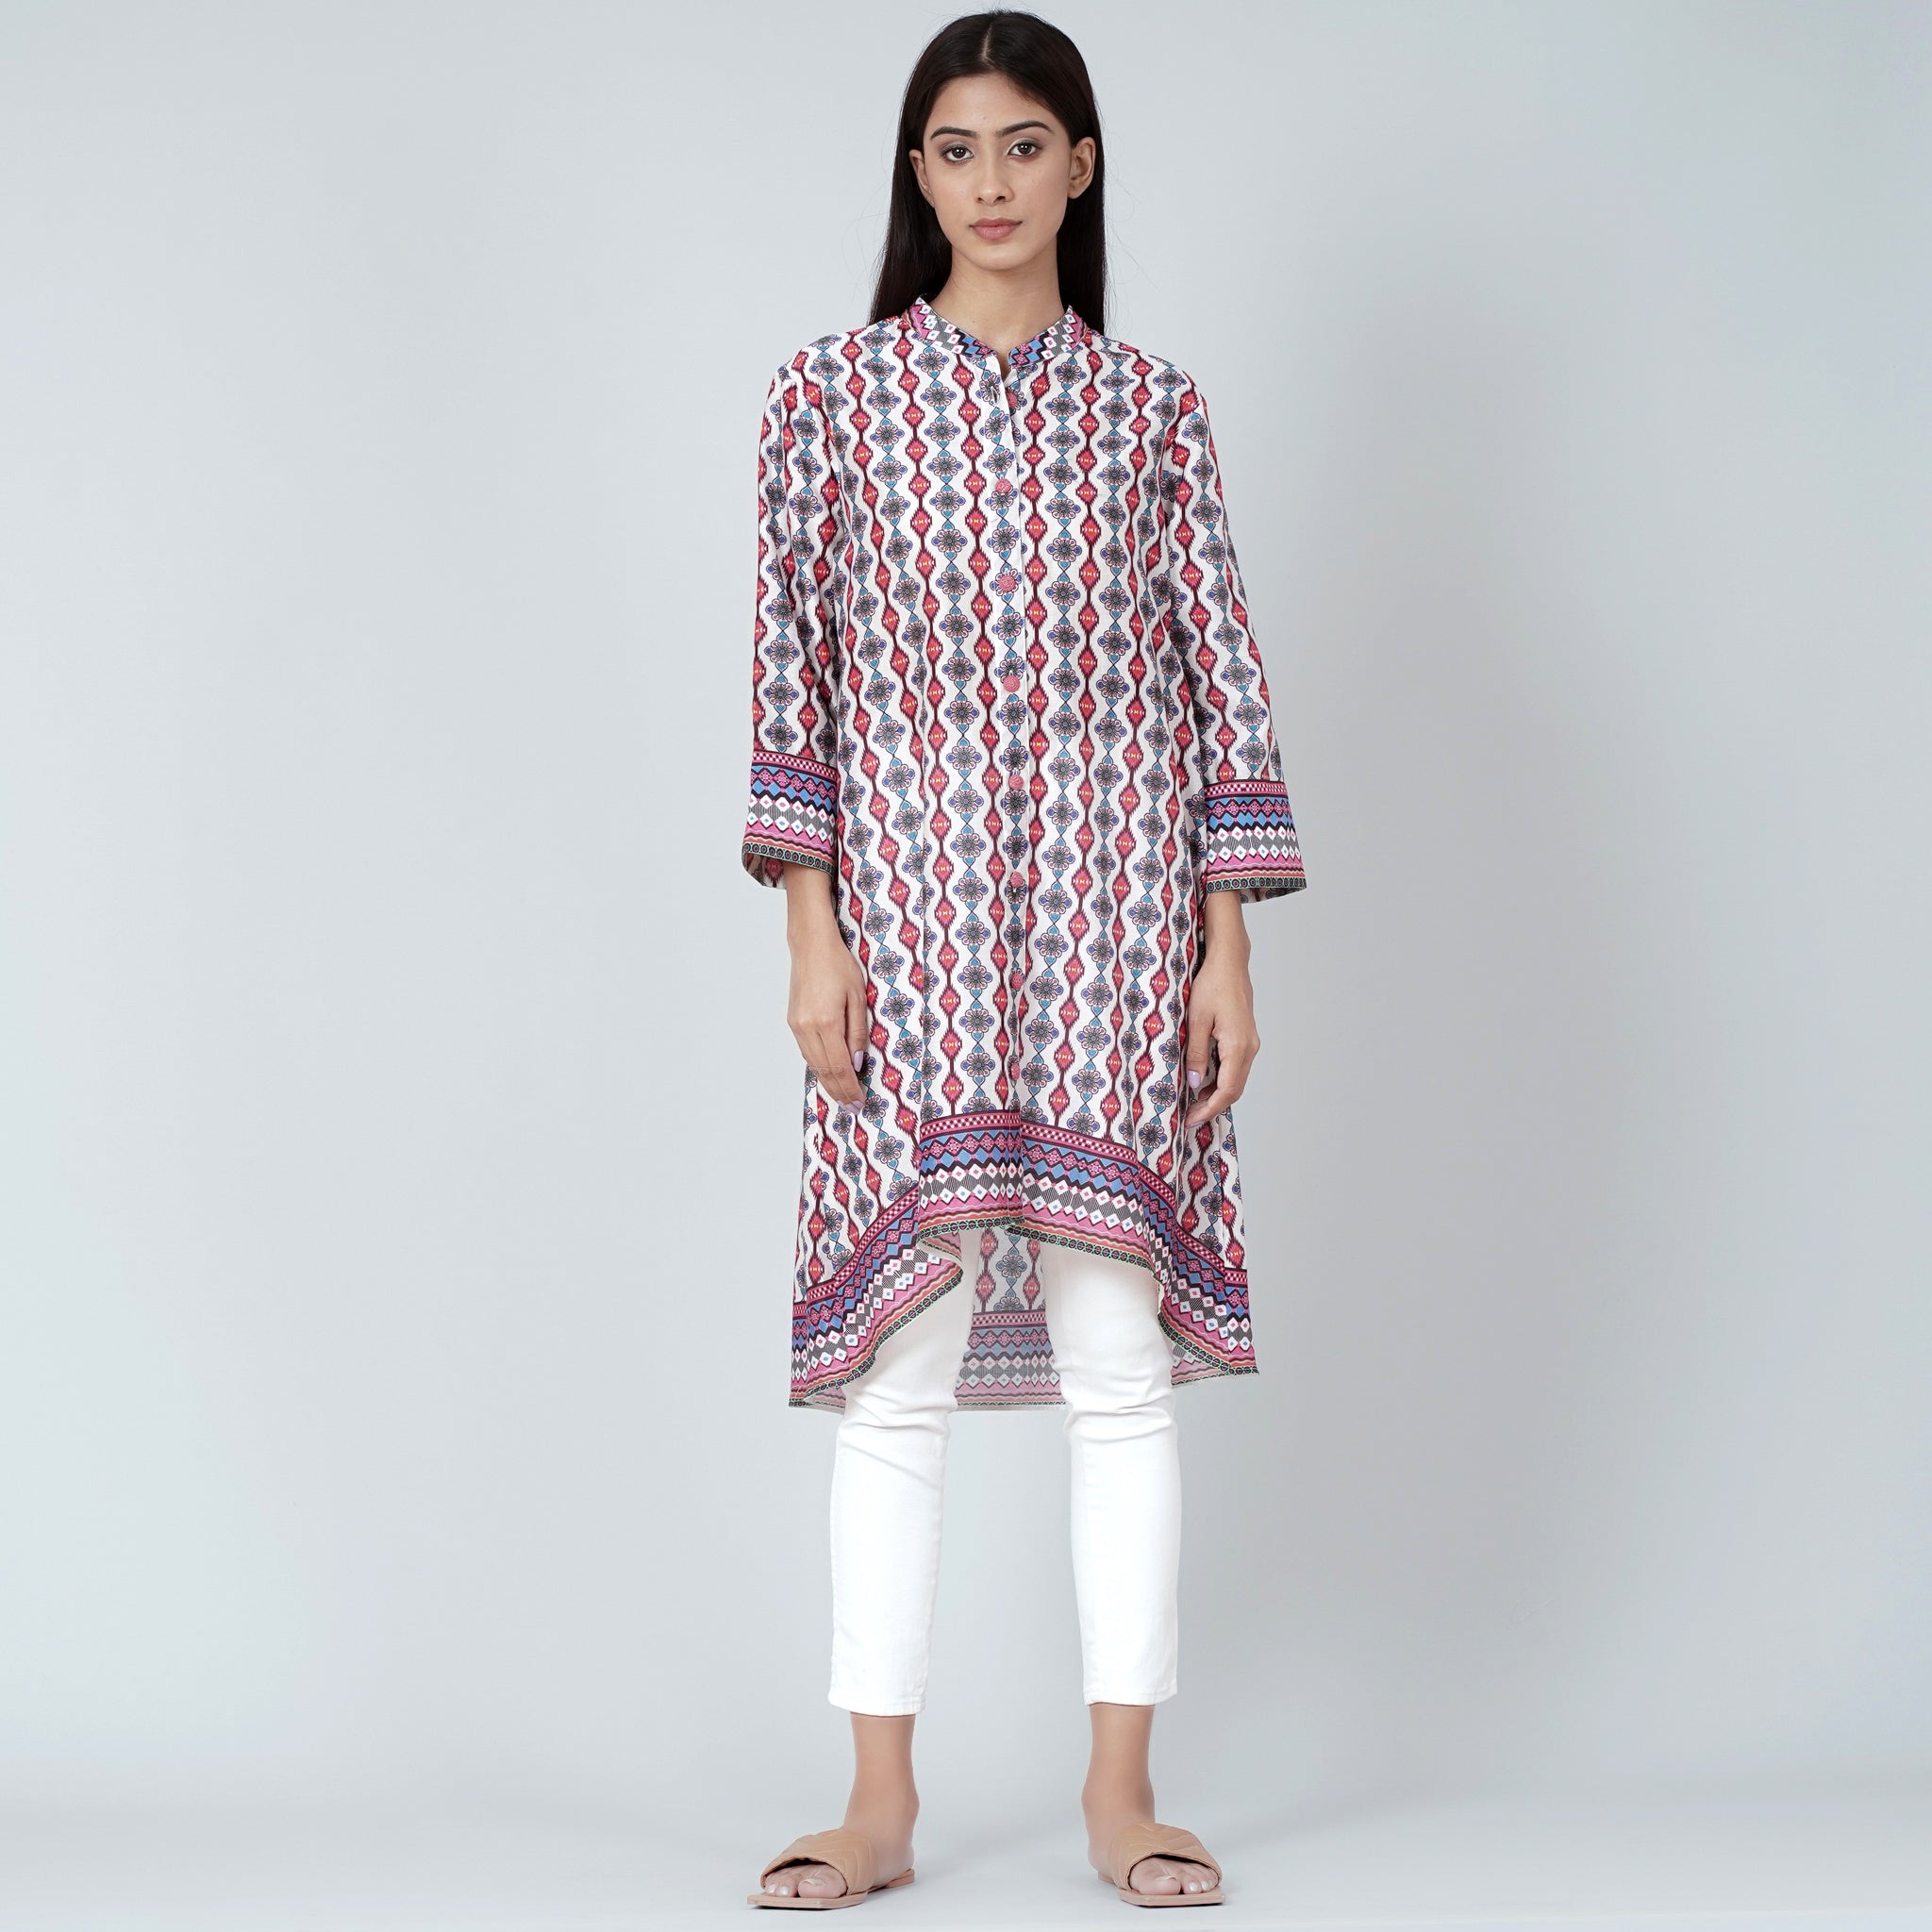 Details more than 65 shirt pattern kurti design